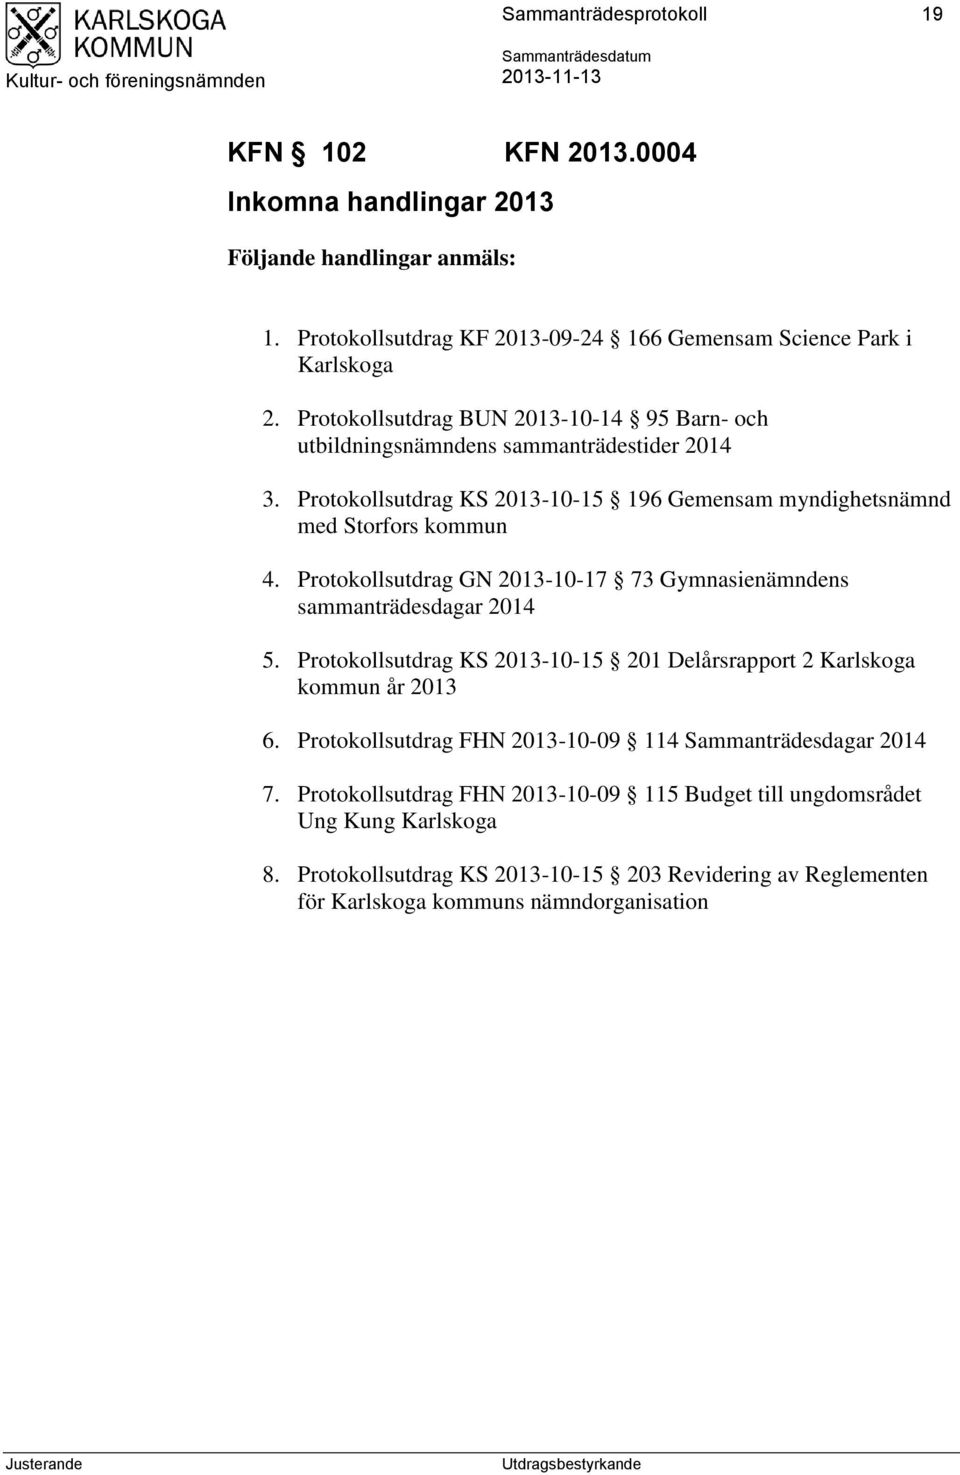 Protokollsutdrag GN 2013-10-17 73 Gymnasienämndens sammanträdesdagar 2014 5. Protokollsutdrag KS 2013-10-15 201 Delårsrapport 2 Karlskoga kommun år 2013 6.